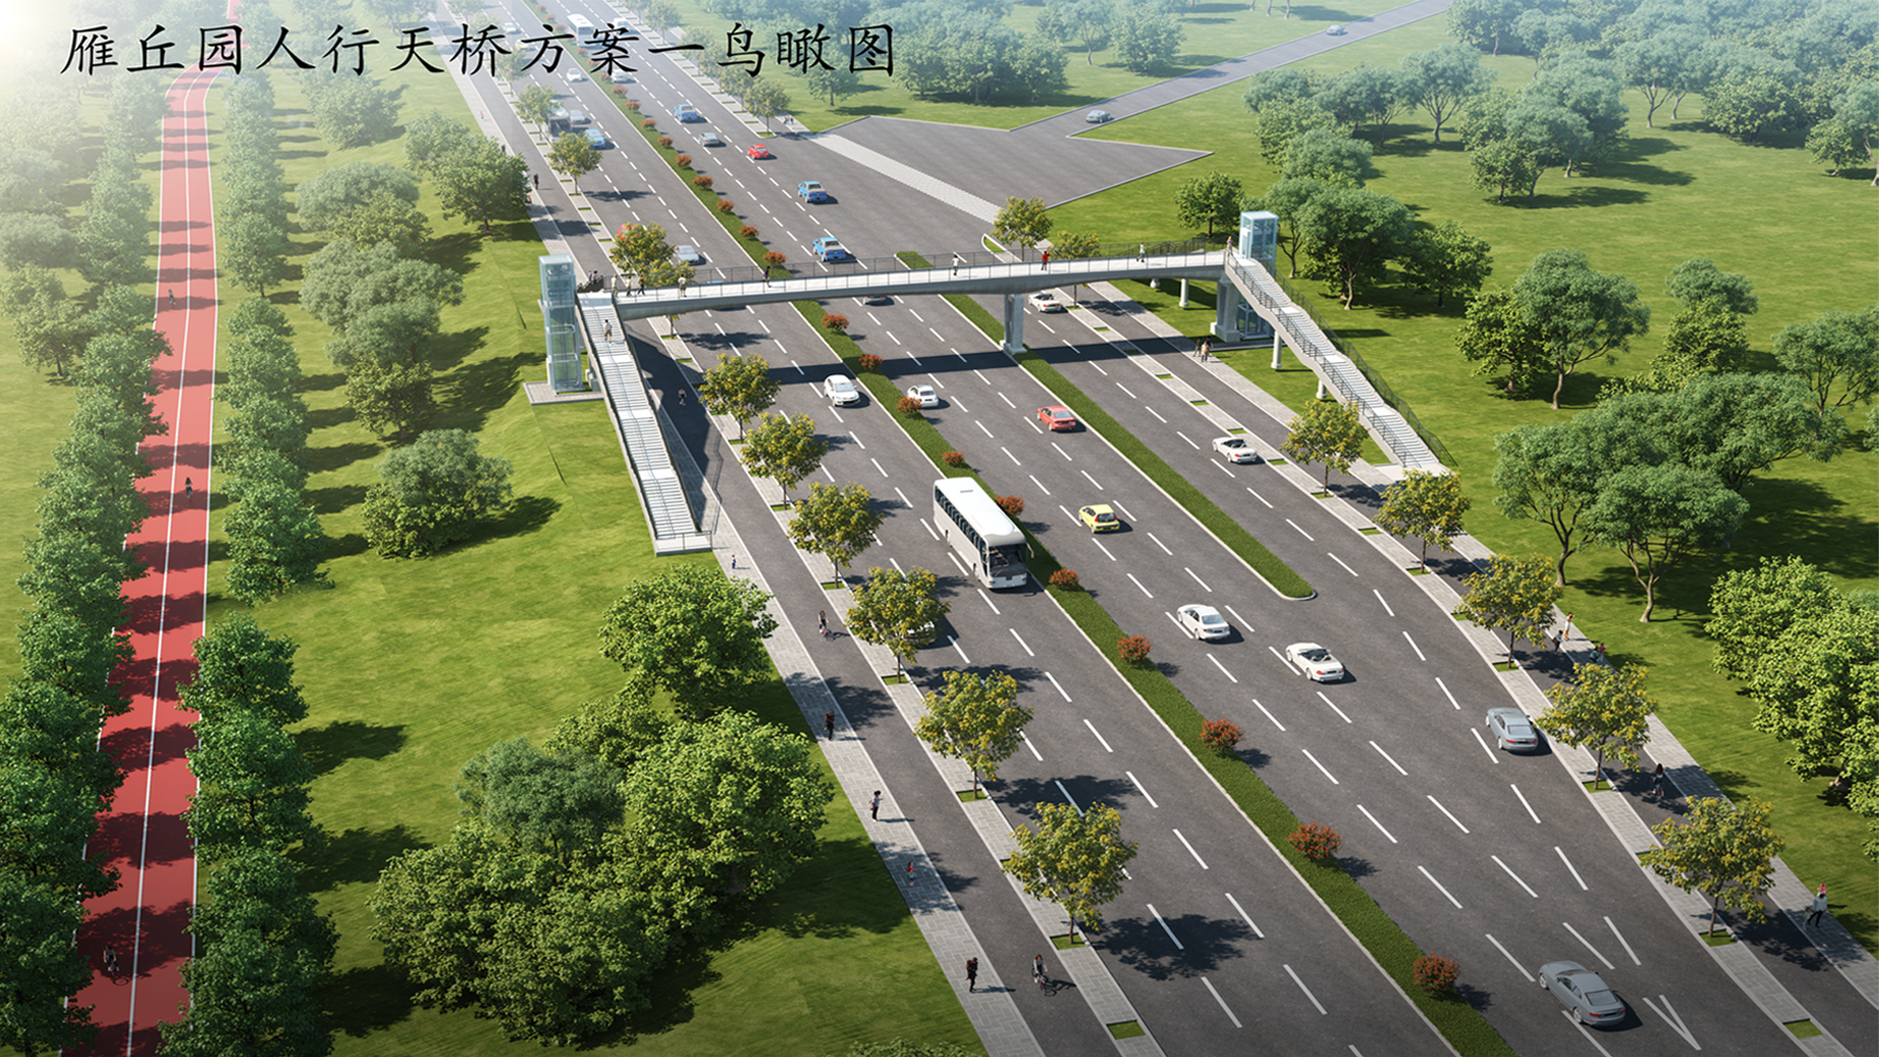 滨河东路将建一座人行天桥 建设工程设计方案公示